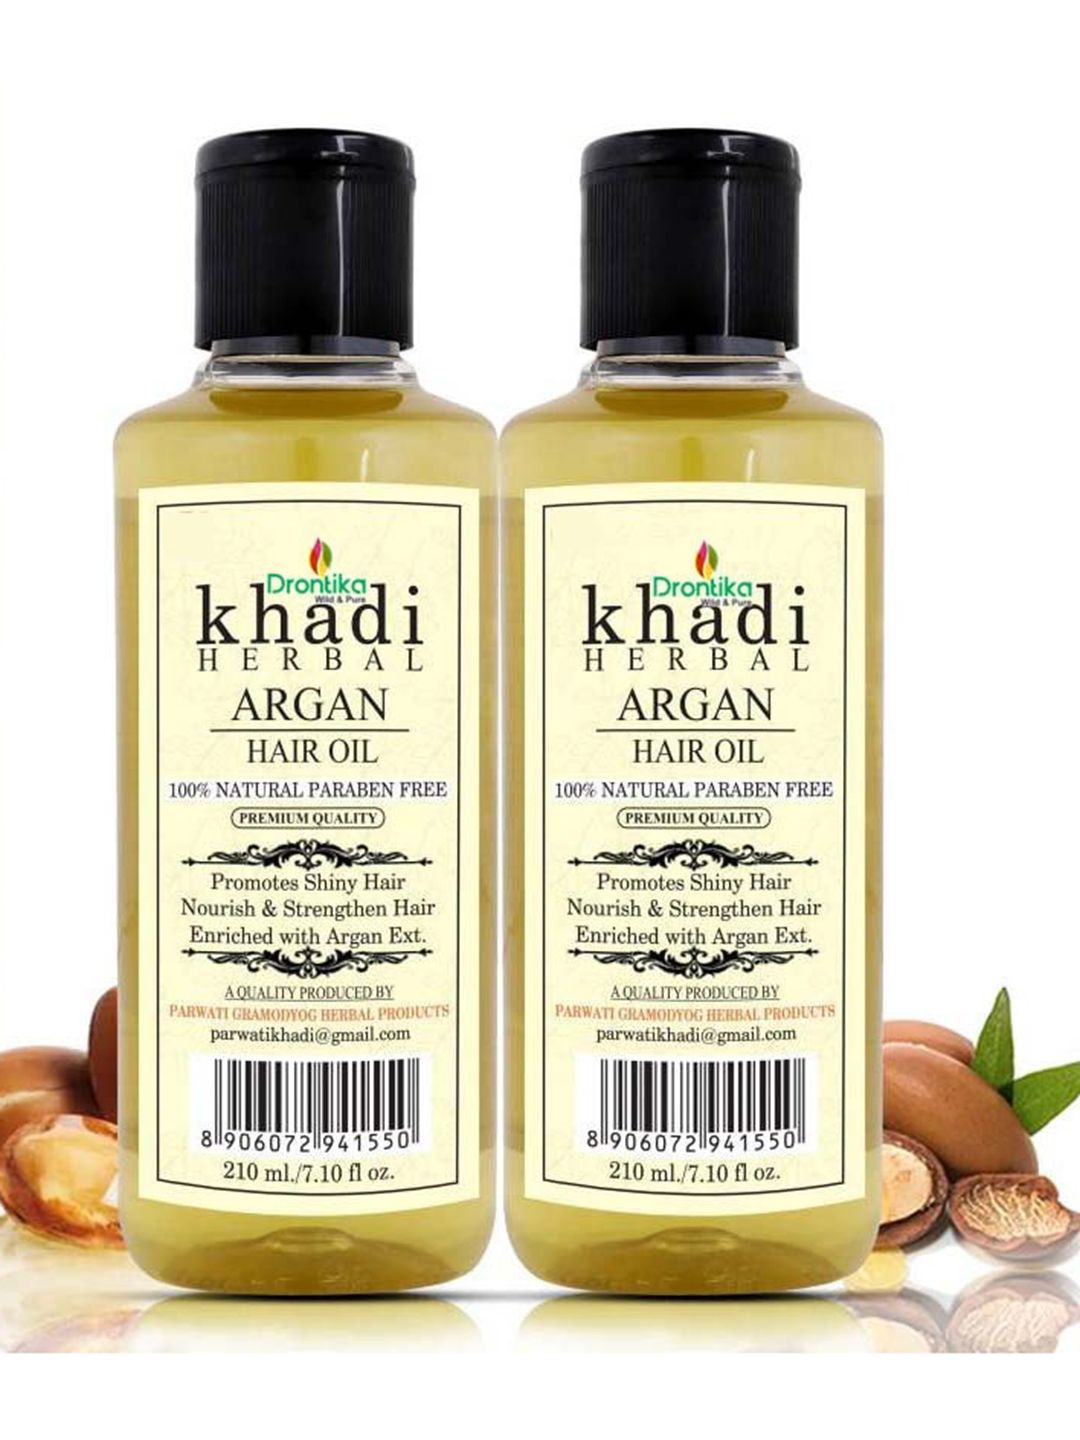 DRONTIKA Set Of 2 Khadi 100% Pure & Herbal Argan Hair Oil 420ml Price in India